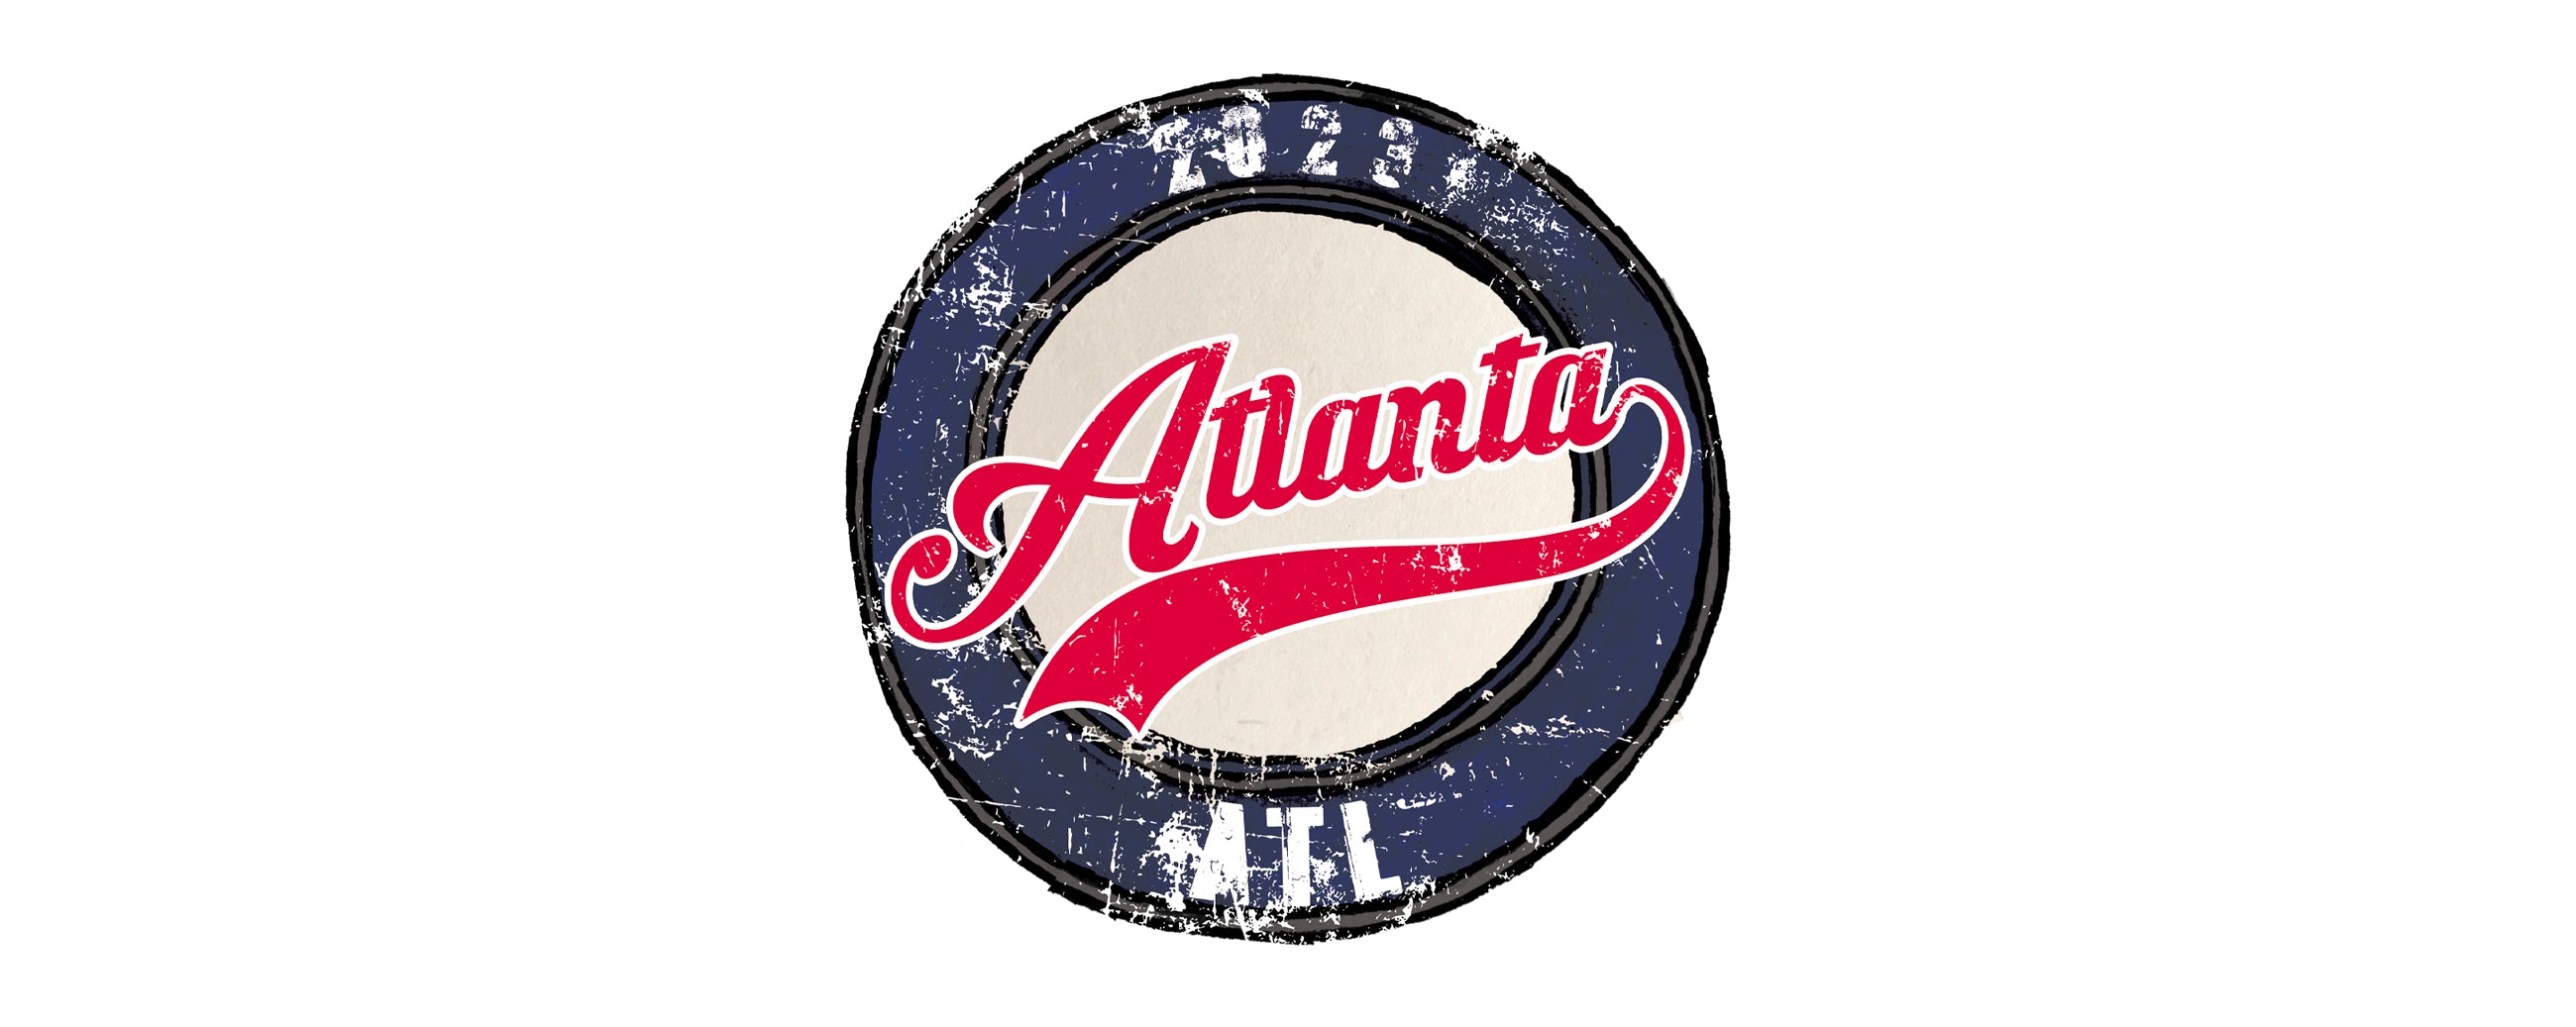 Atlanta Braves VIP Postseason